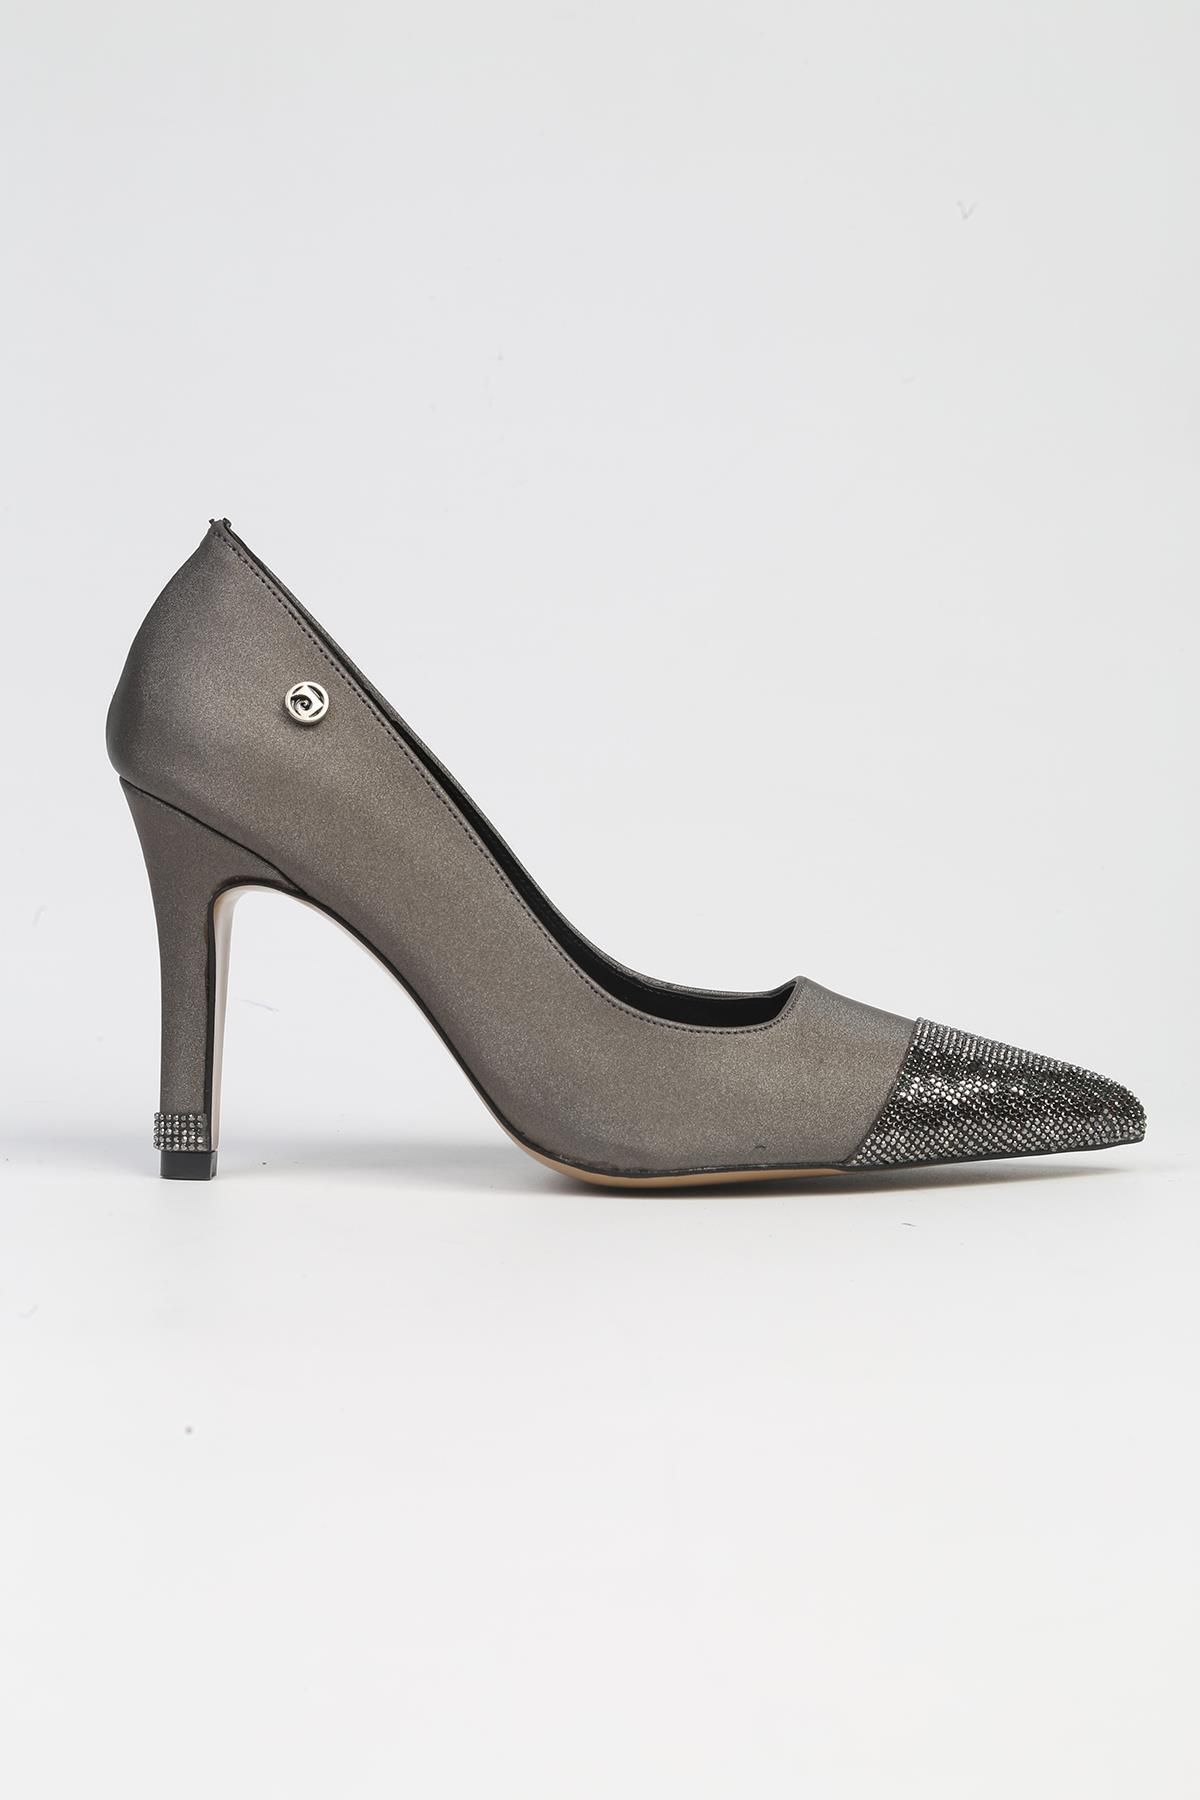 Pierre Cardin ® | PC-52616 - 3691 Platin-Kadın Topuklu Ayakkabı